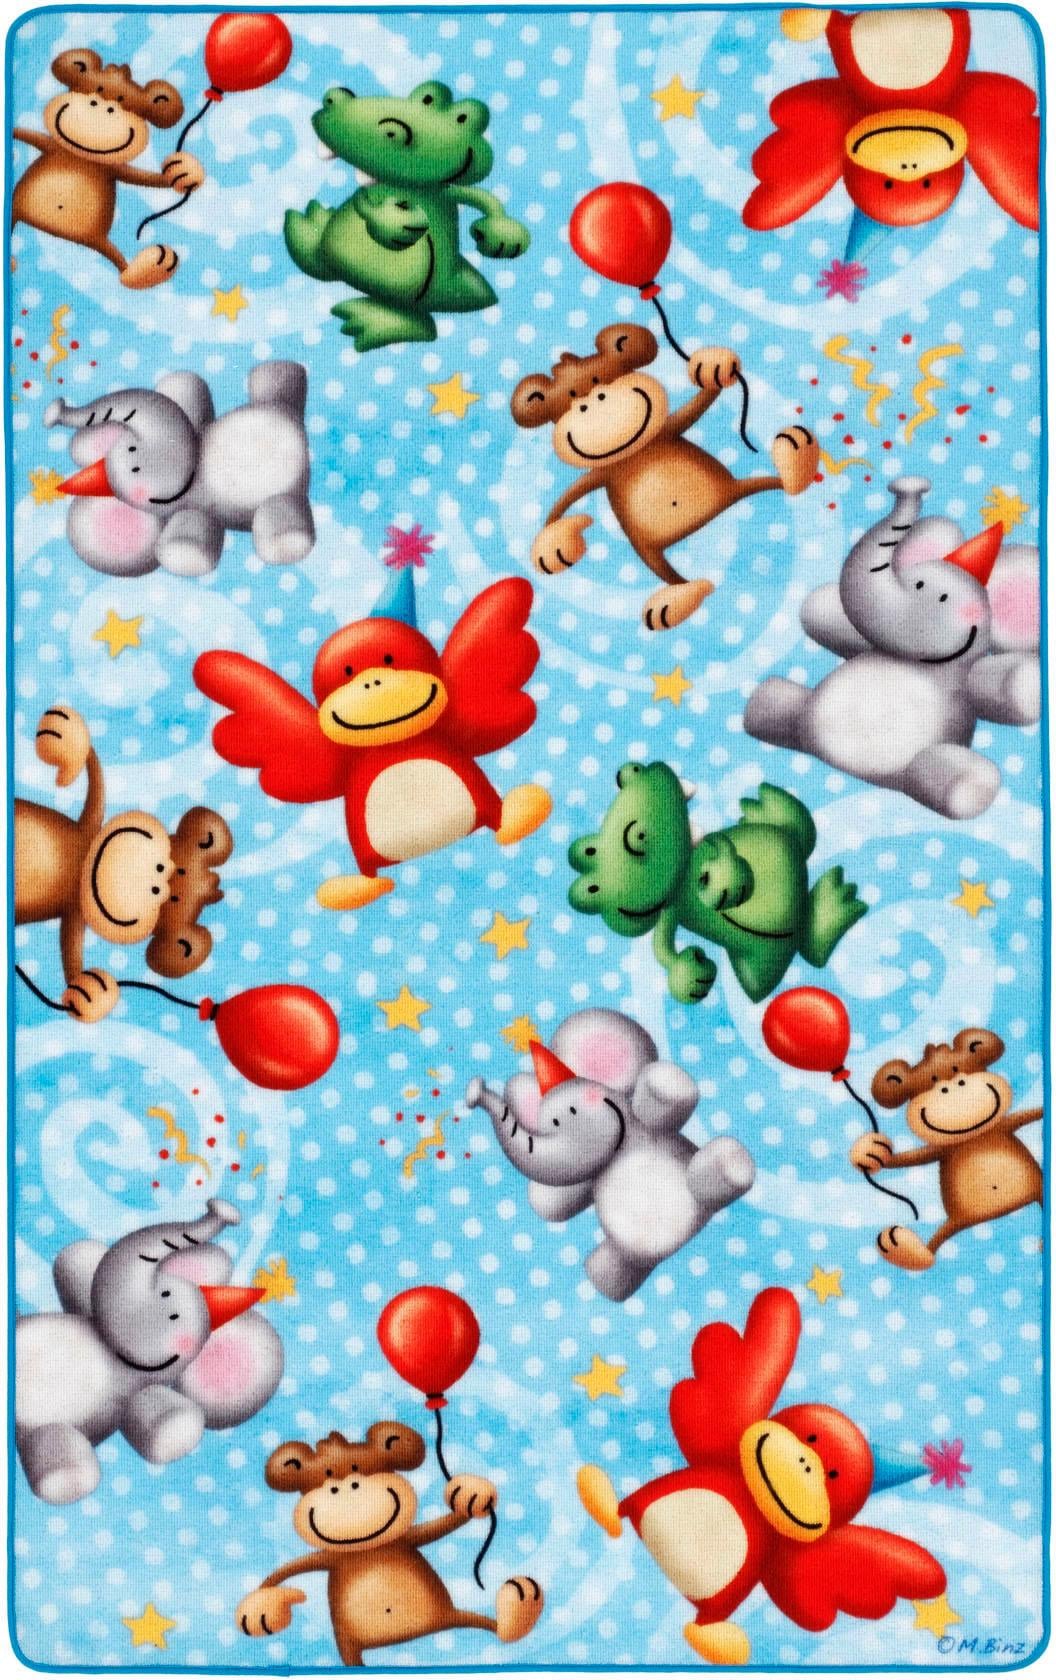 Böing Carpet Kinderteppich »Lovely Kids LK-4 Affen«, rechteckig, Motiv Zootiere, Kinderzimmer